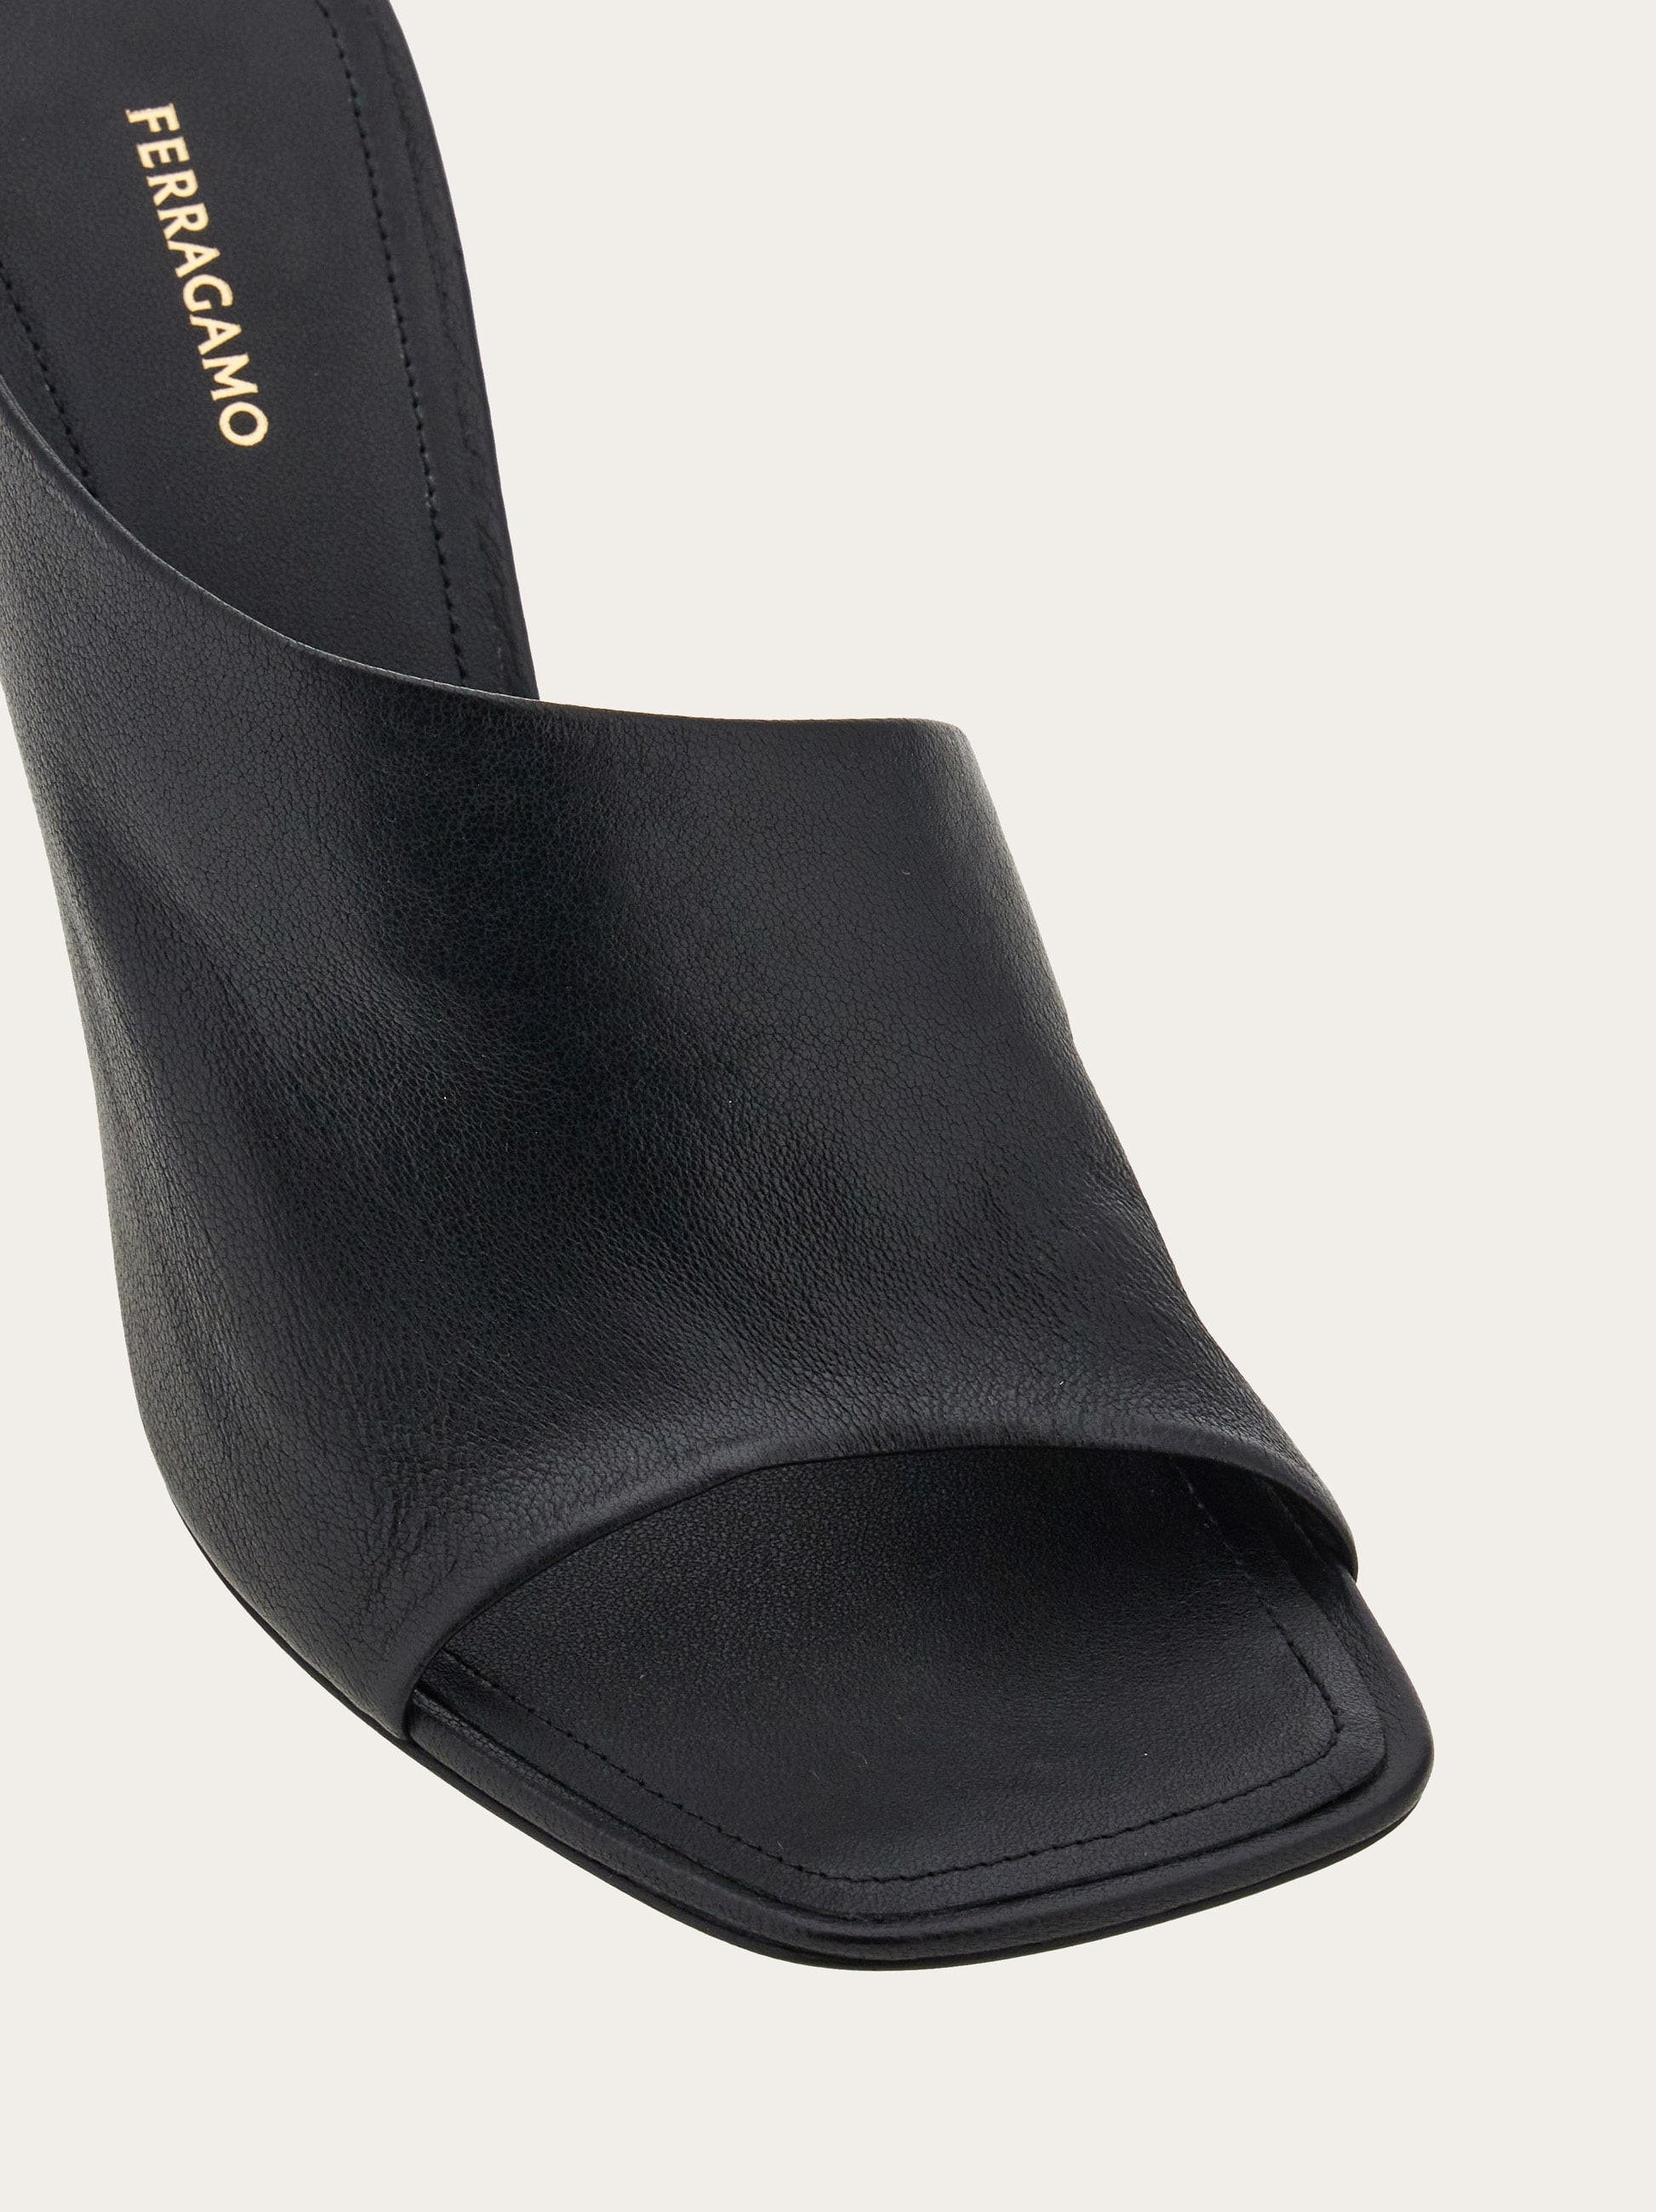 Curved heel slide - 6